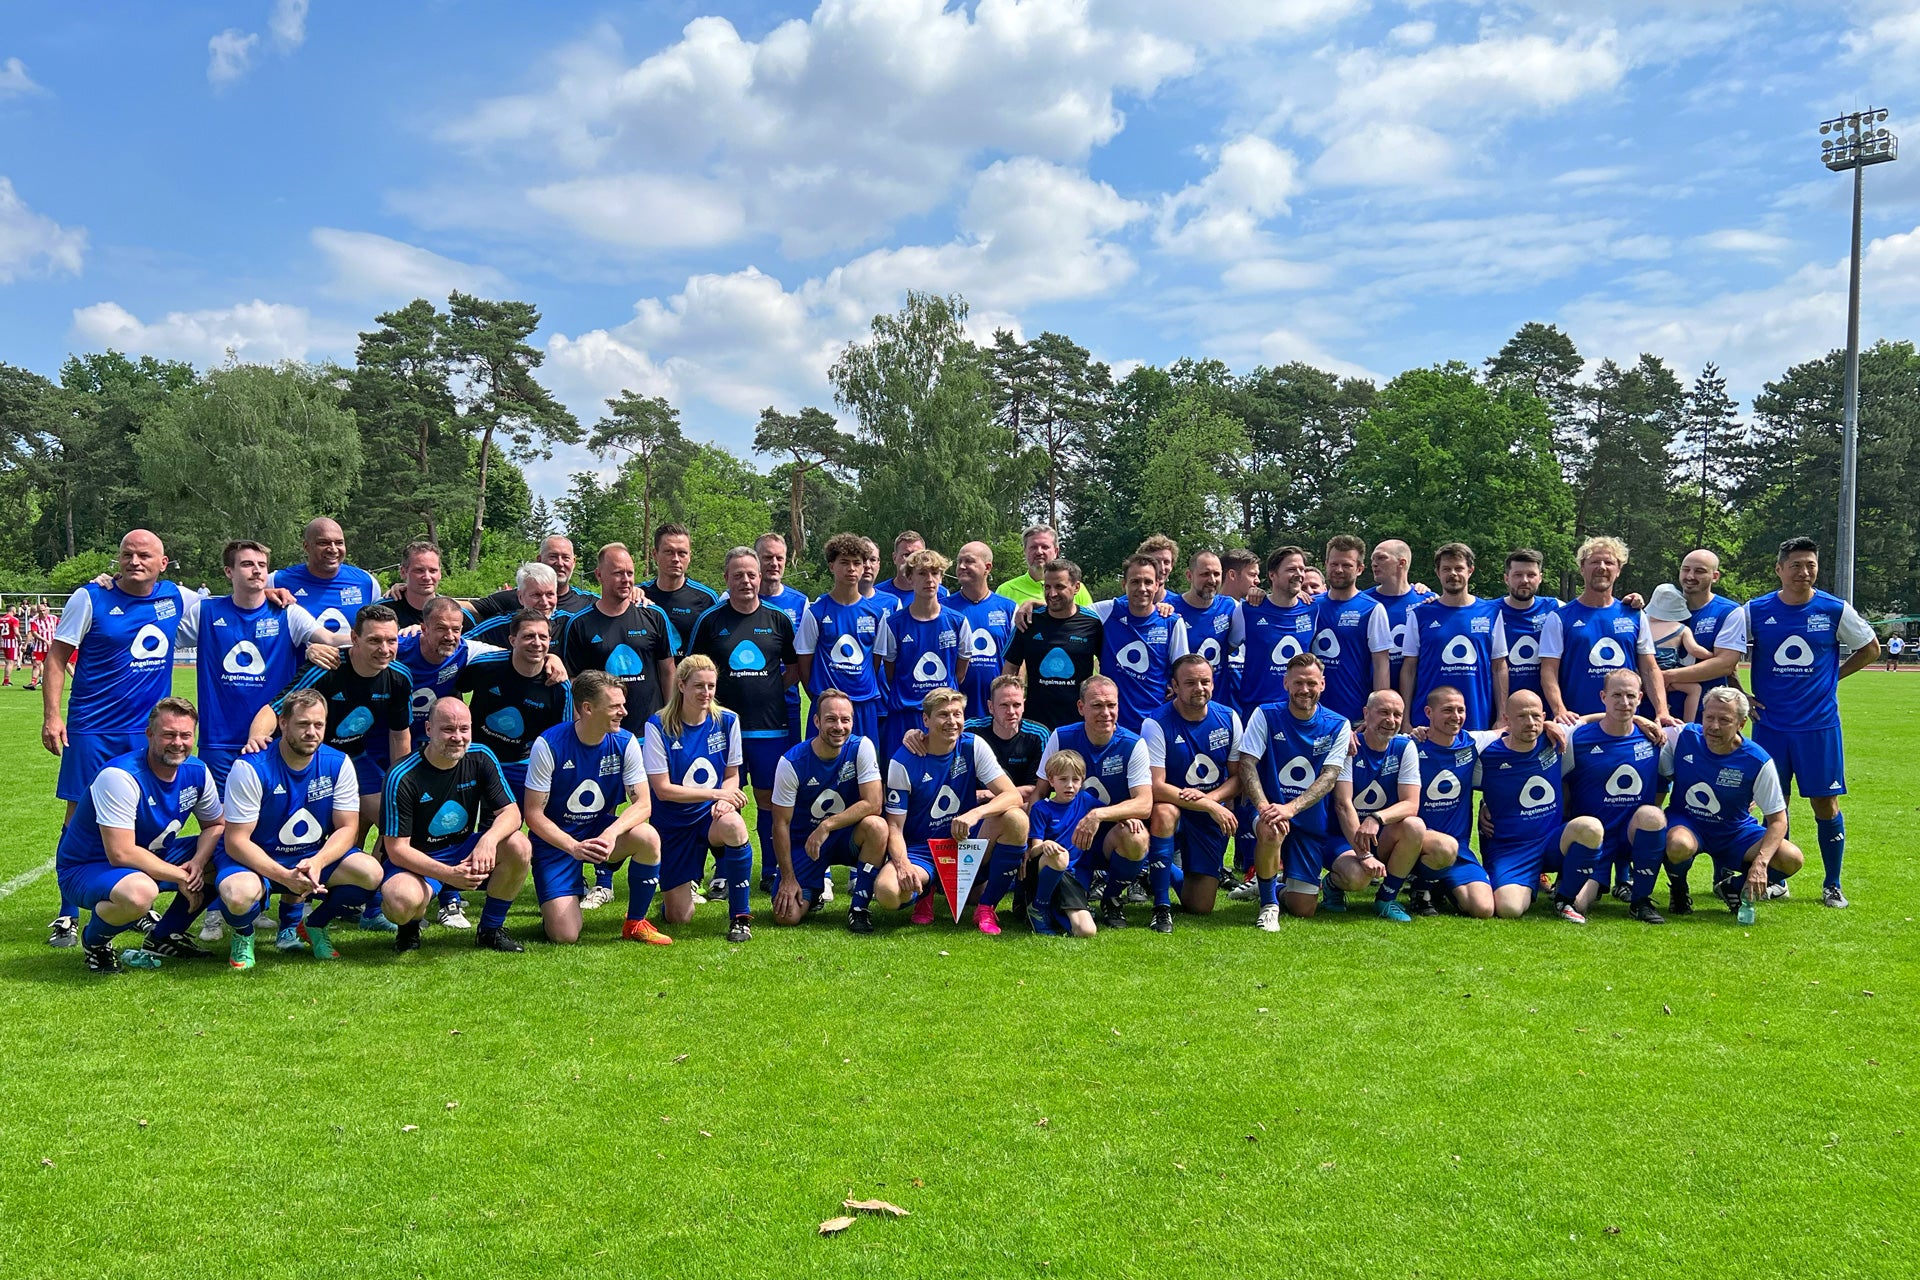 Gemeinsam stark: Fußball und Solidarität beim Benefizspiel für das Angelman-Syndrom